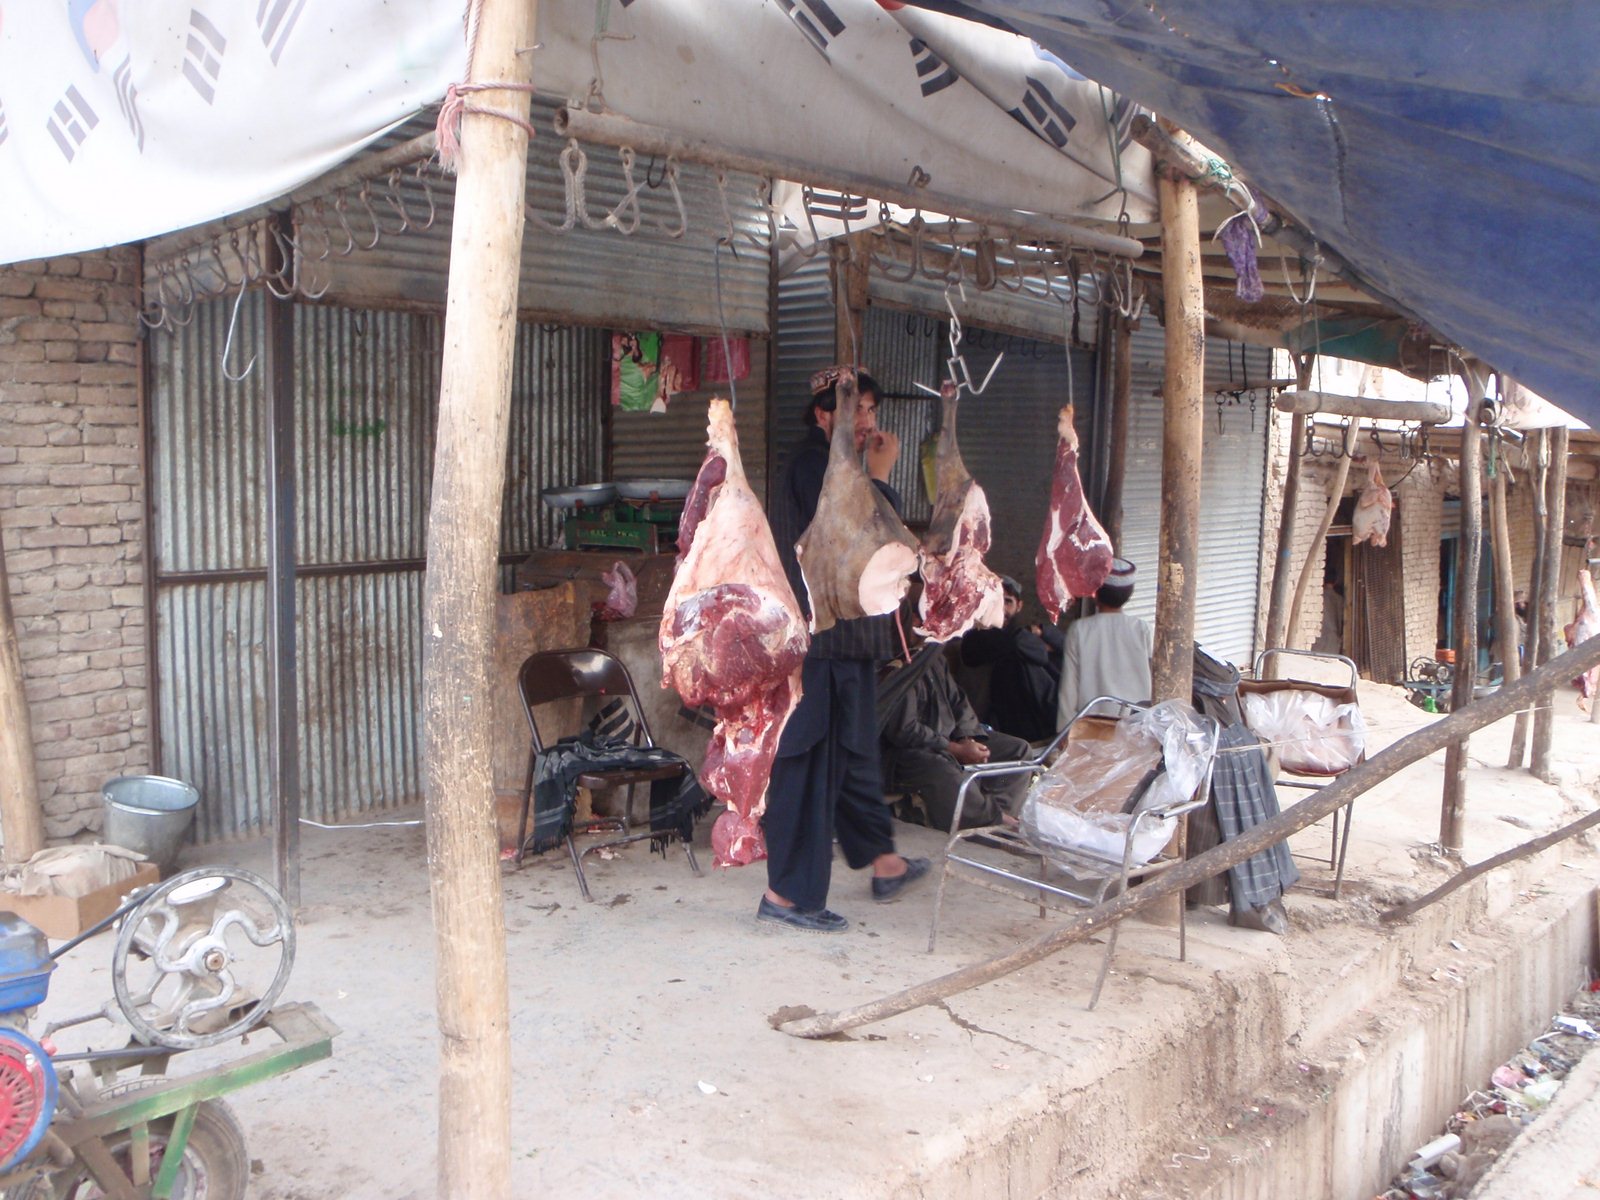 Afghan butcher shop